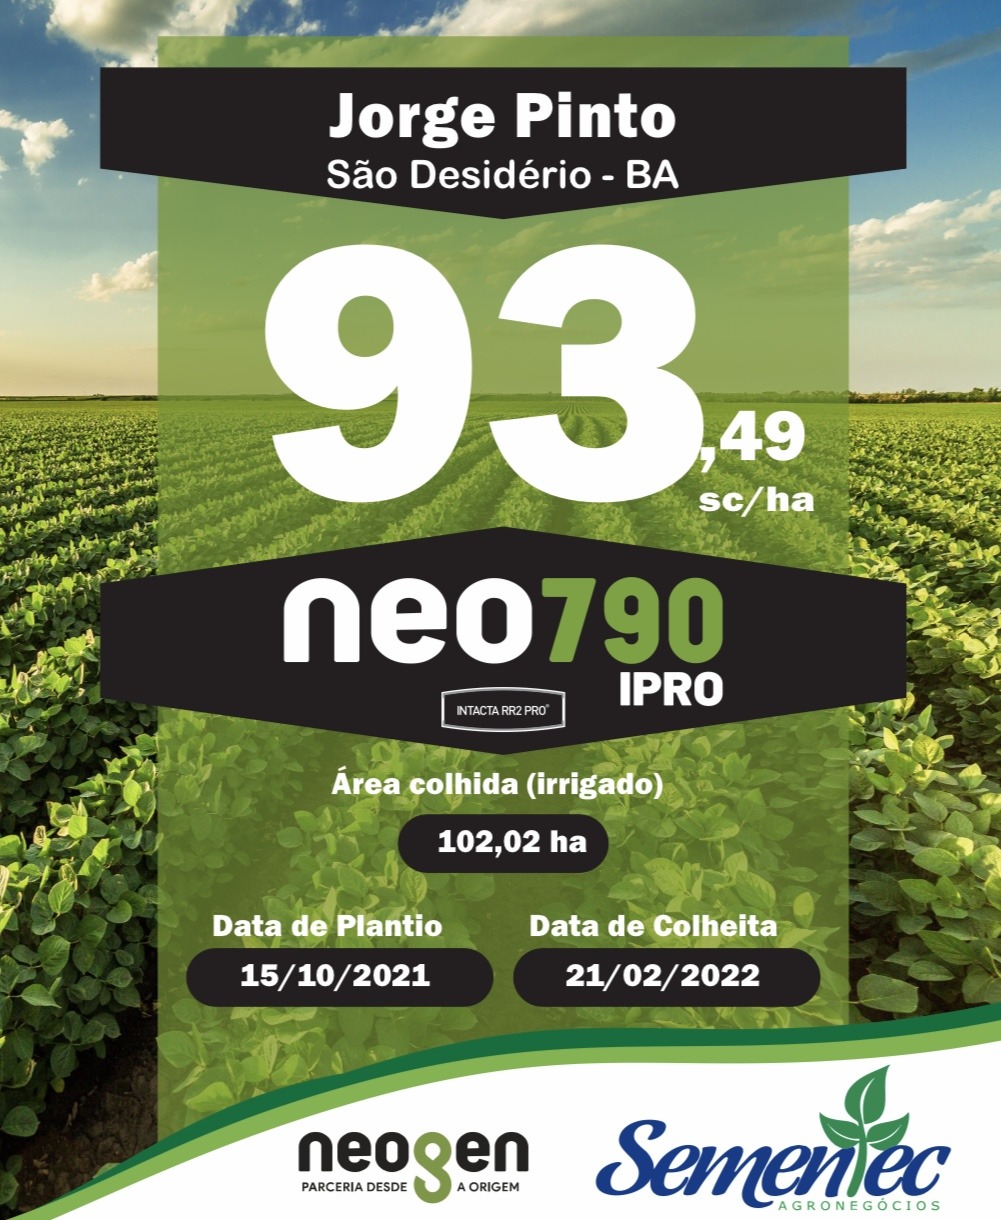 NEO 790 IPRO